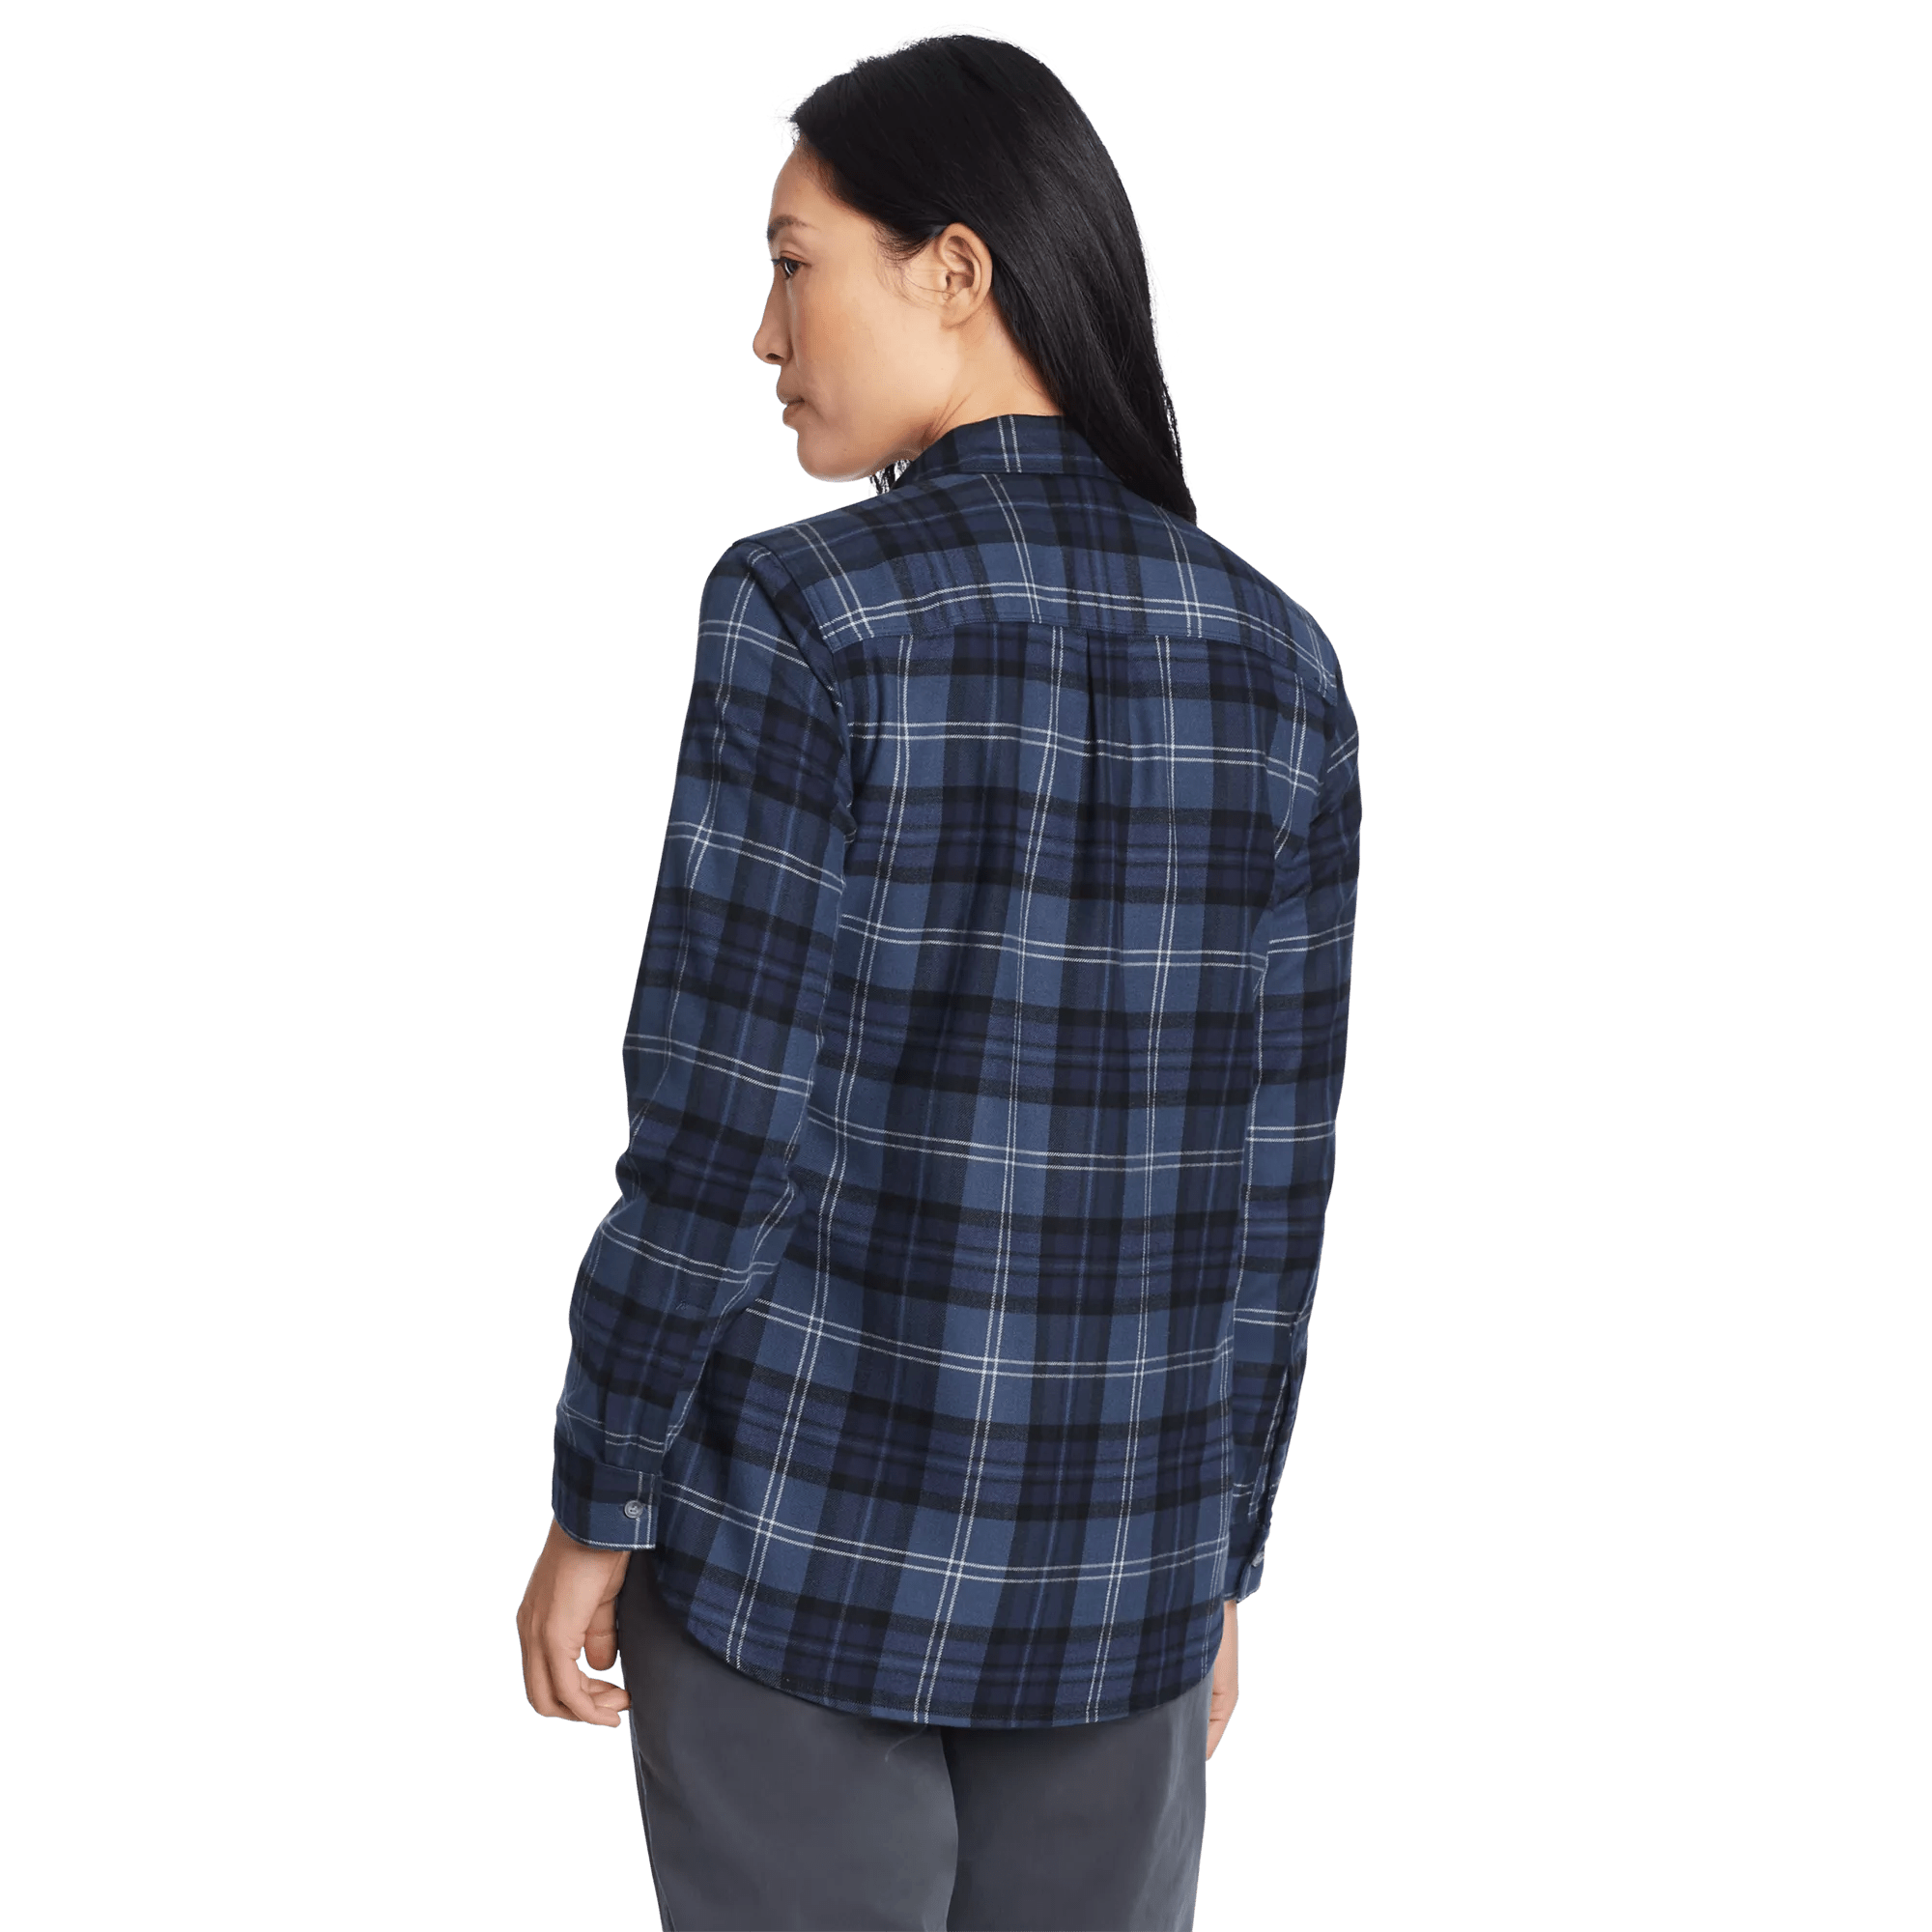 Firelight Flannel Shirt